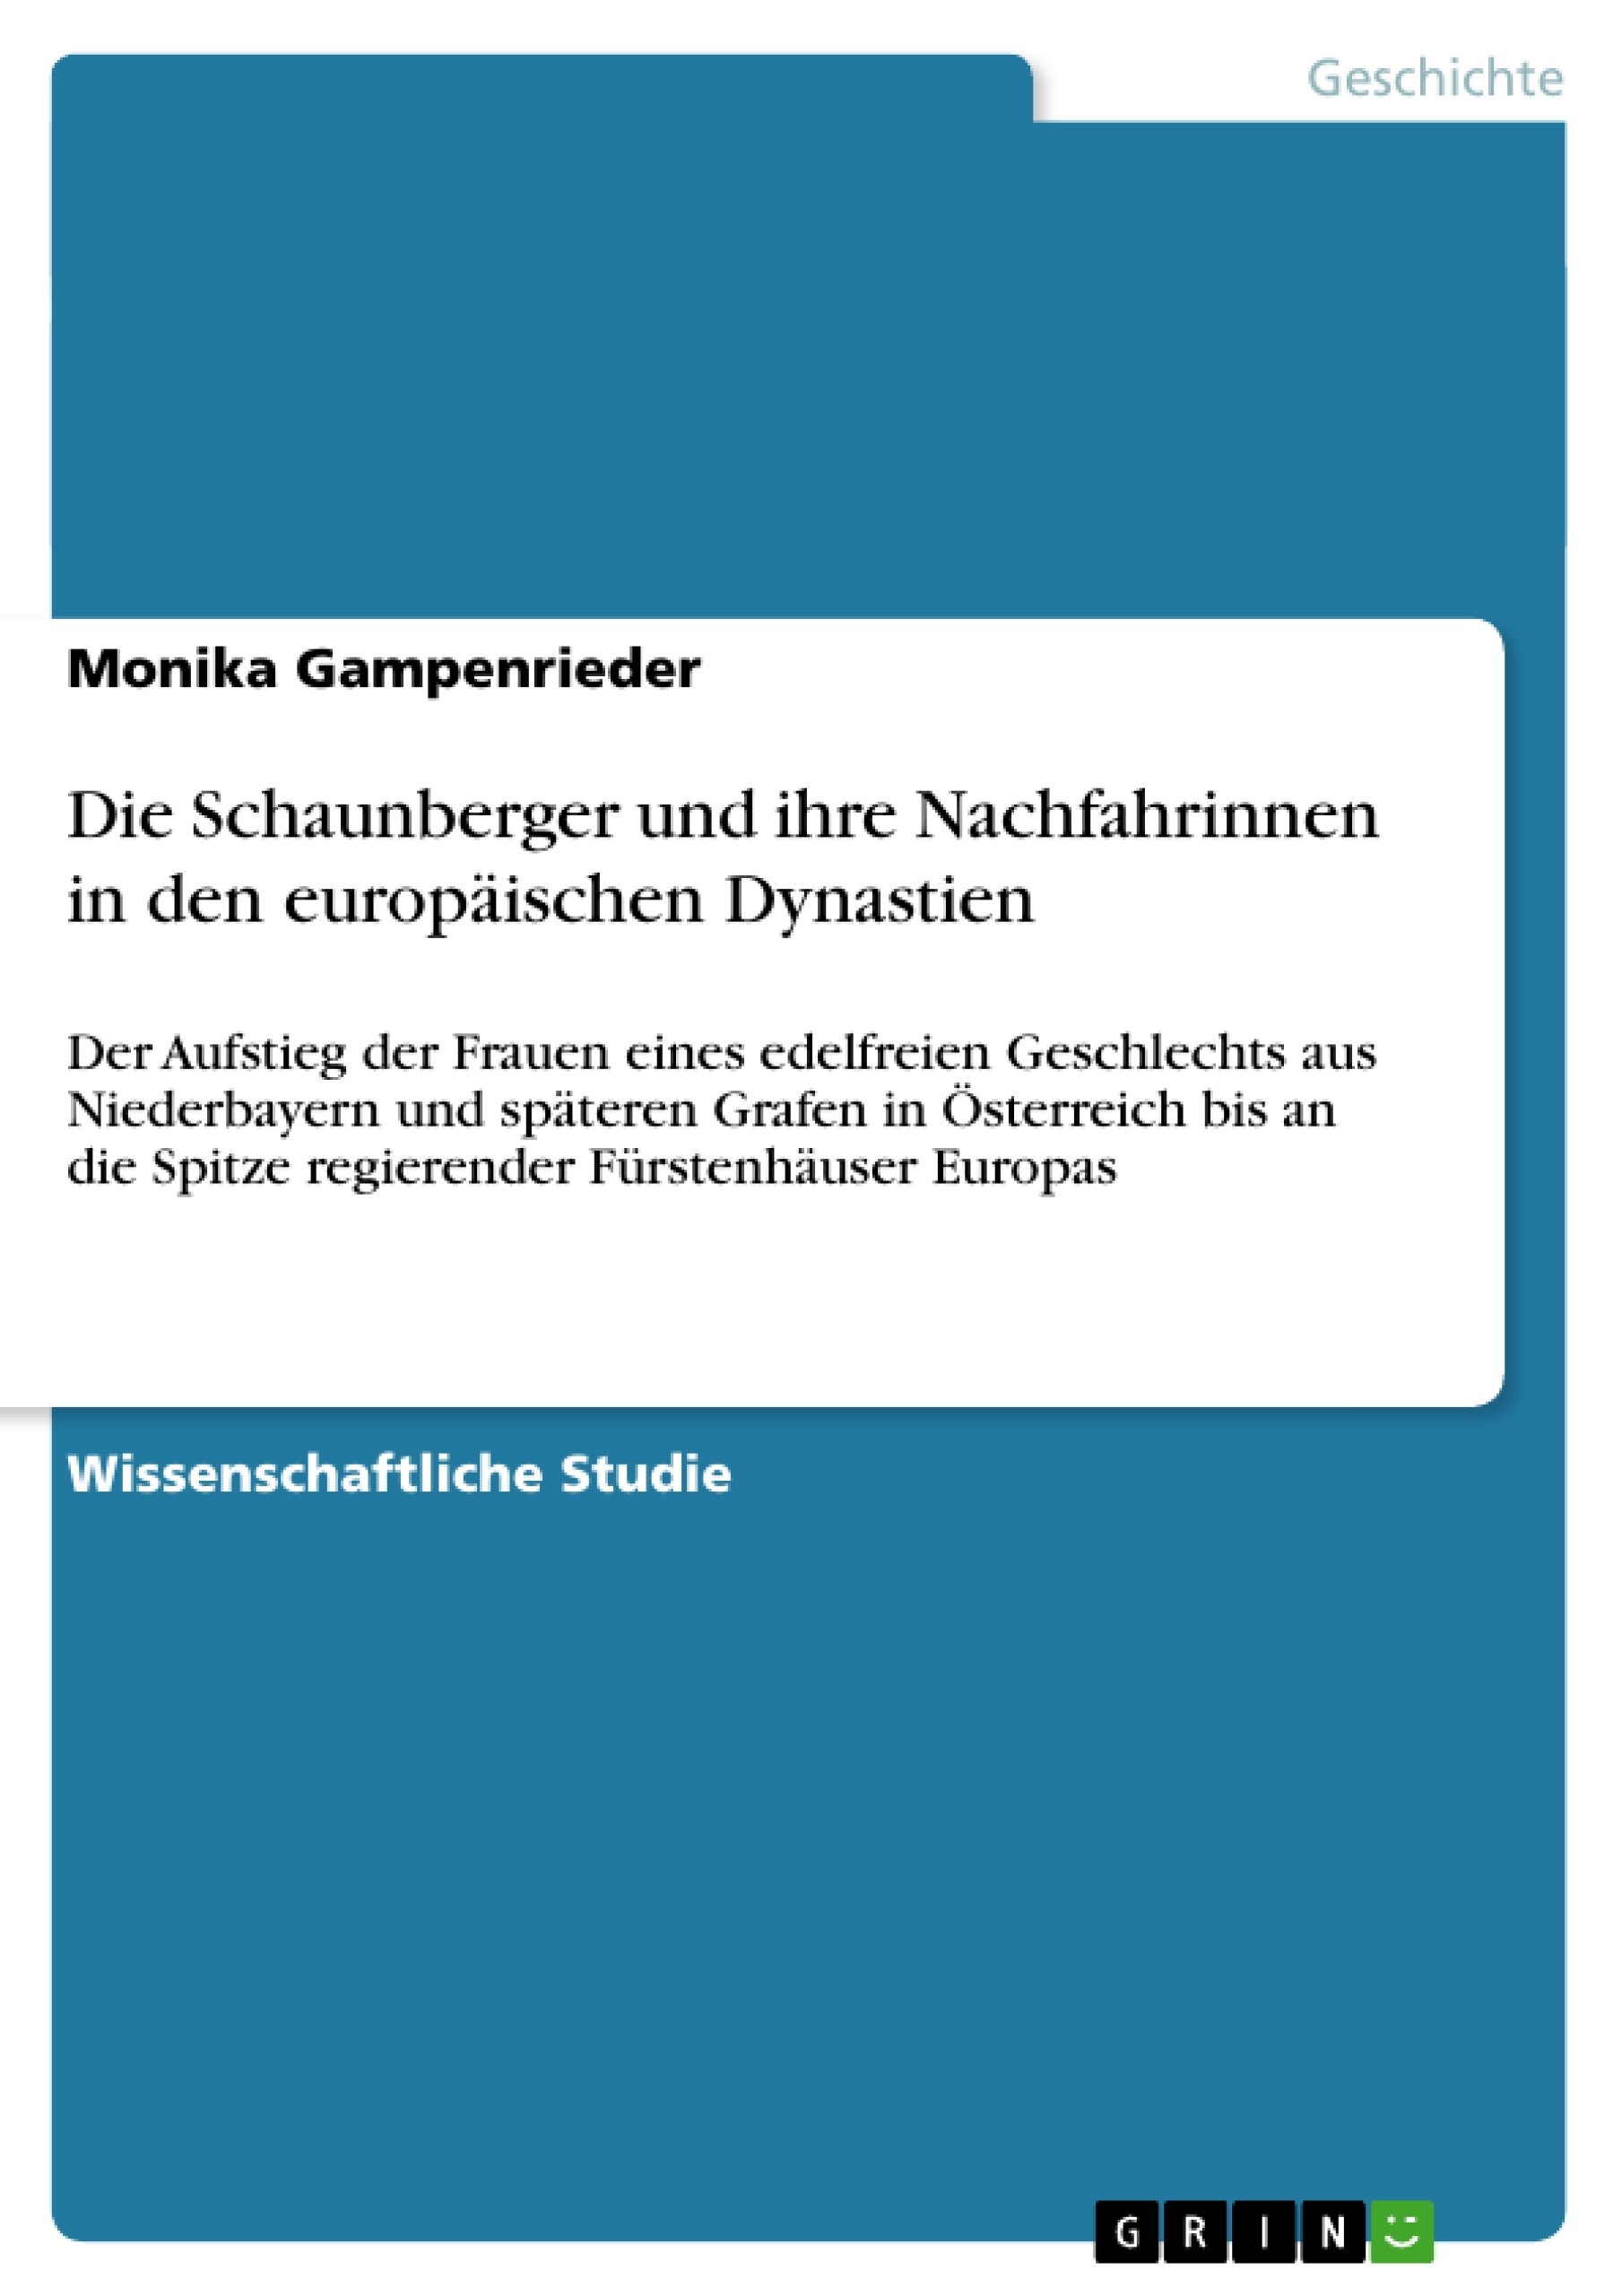 Titel: Die Schaunberger und ihre Nachfahrinnen in den europäischen Dynastien